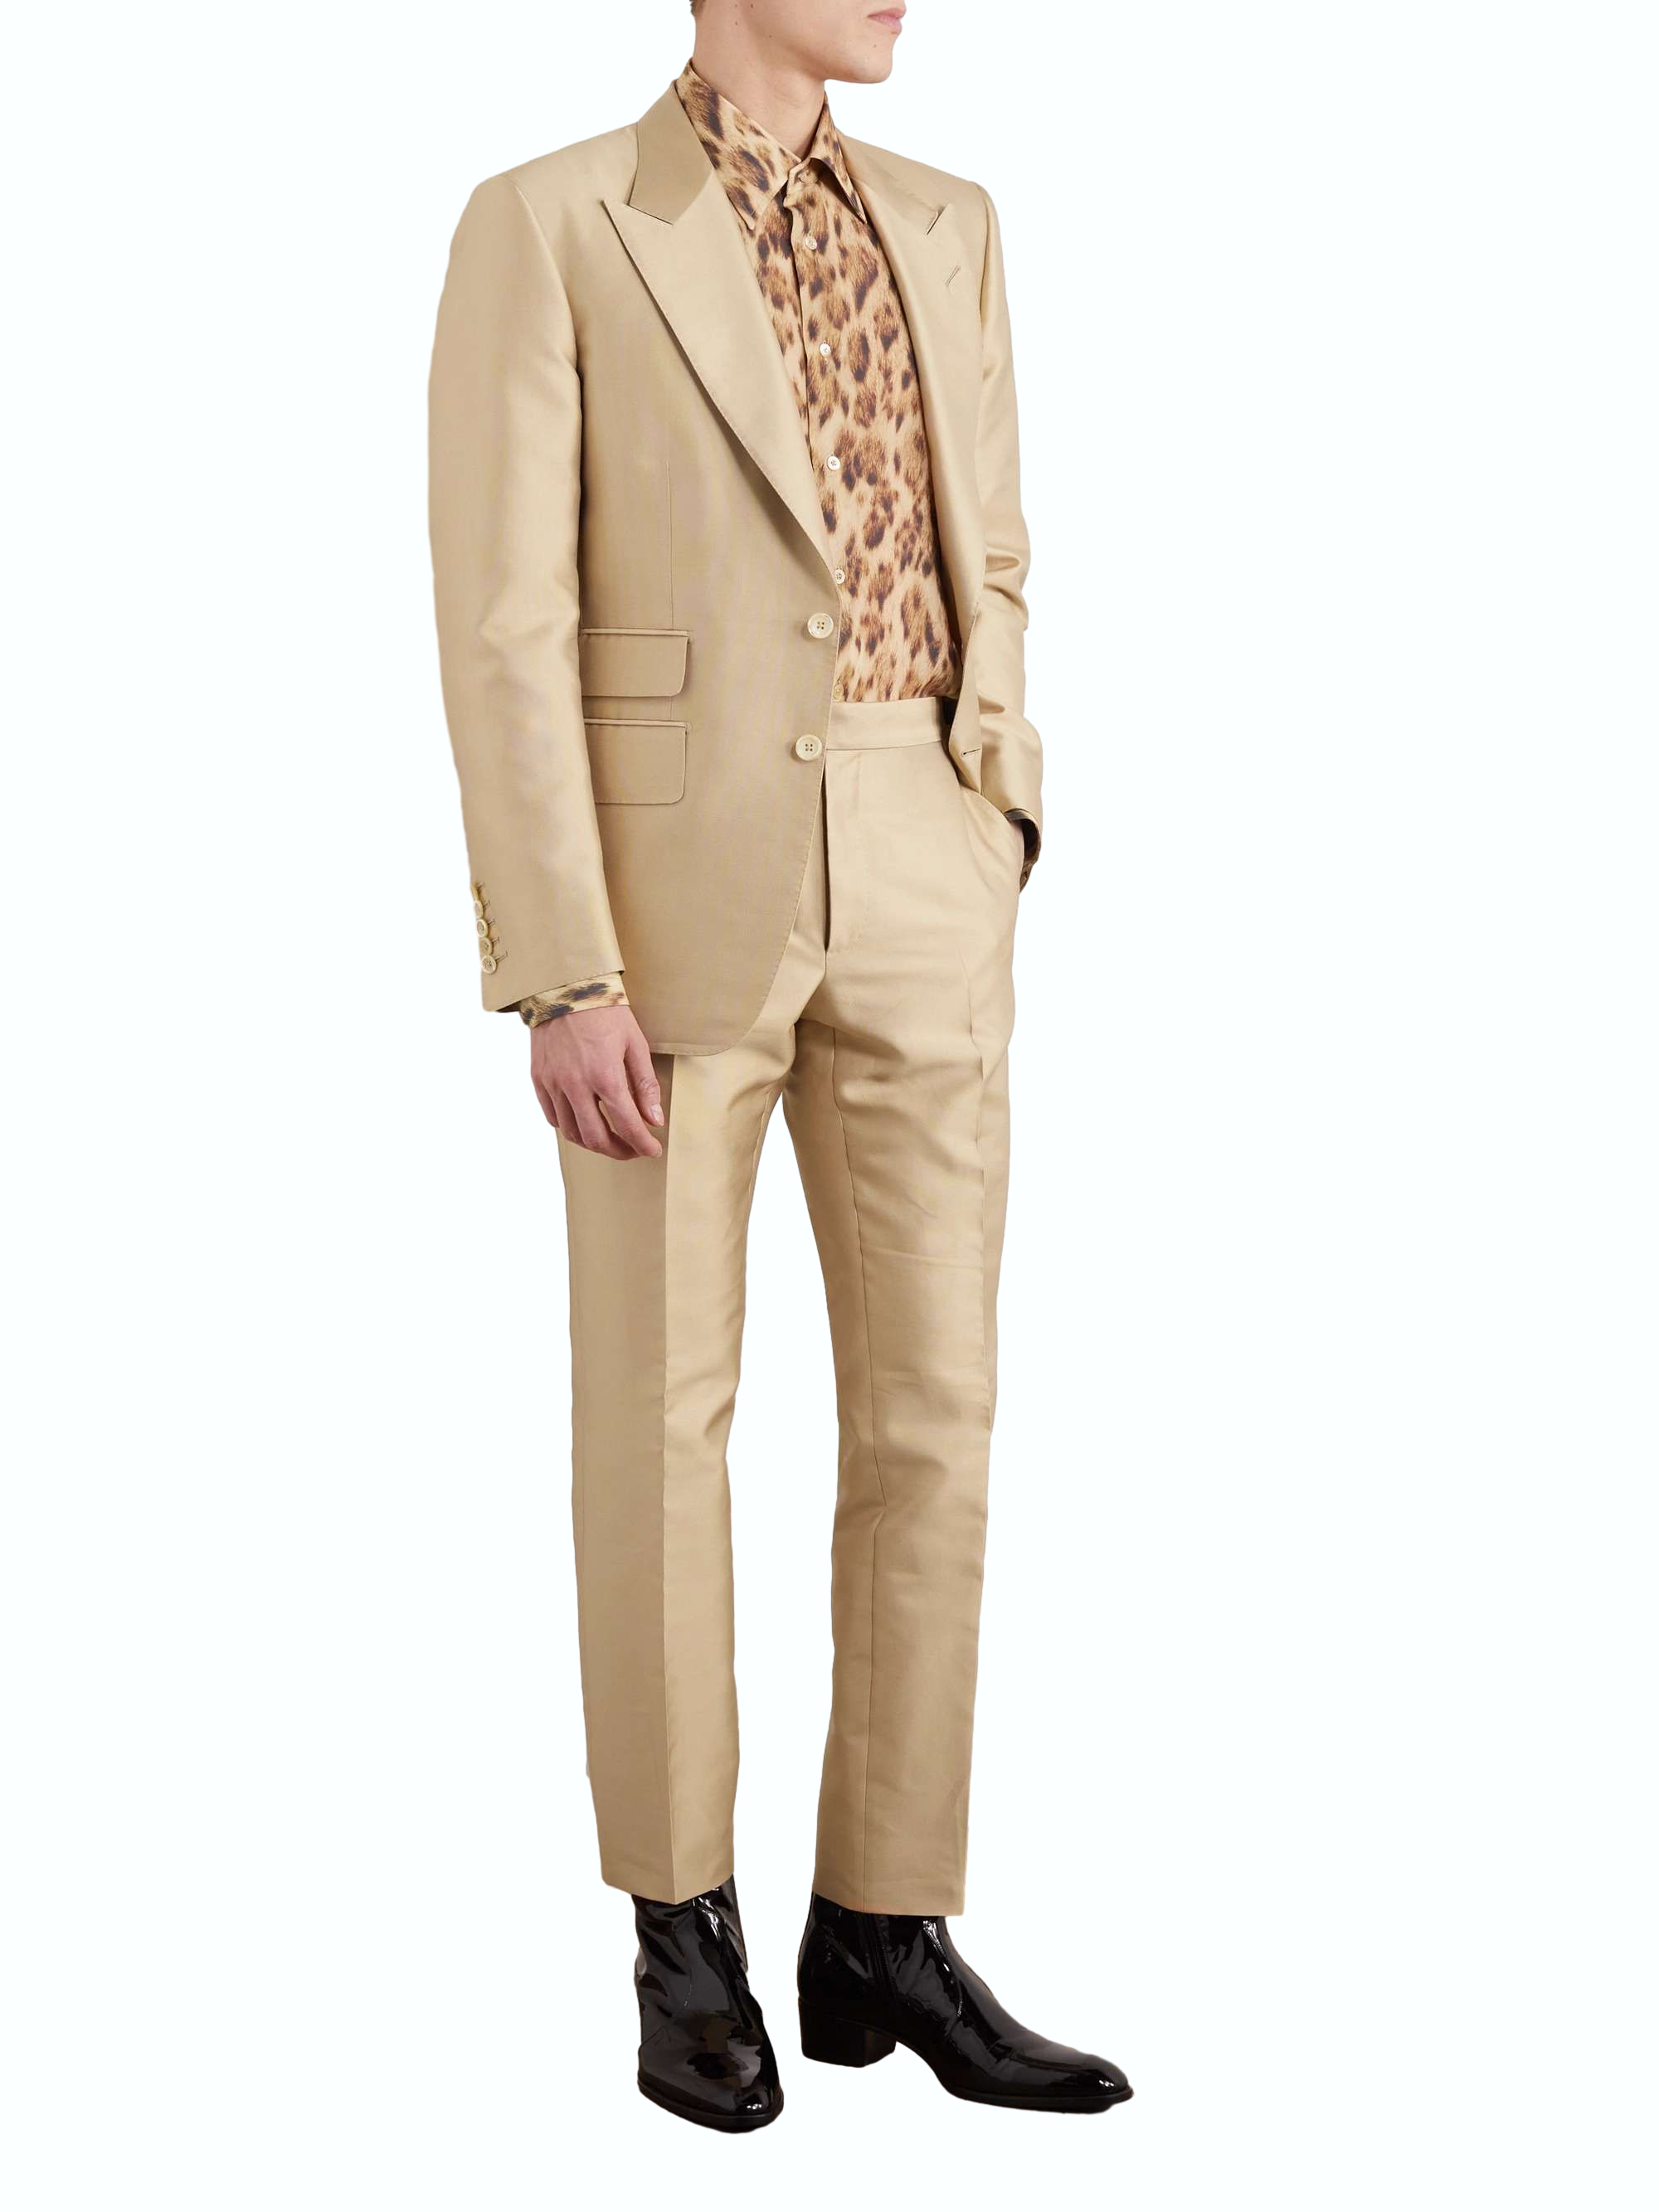 Новый дизайн Турецкие мужские костюмы Прямая Производитель Jacket Suit Оптовая торговля Мужская одежда